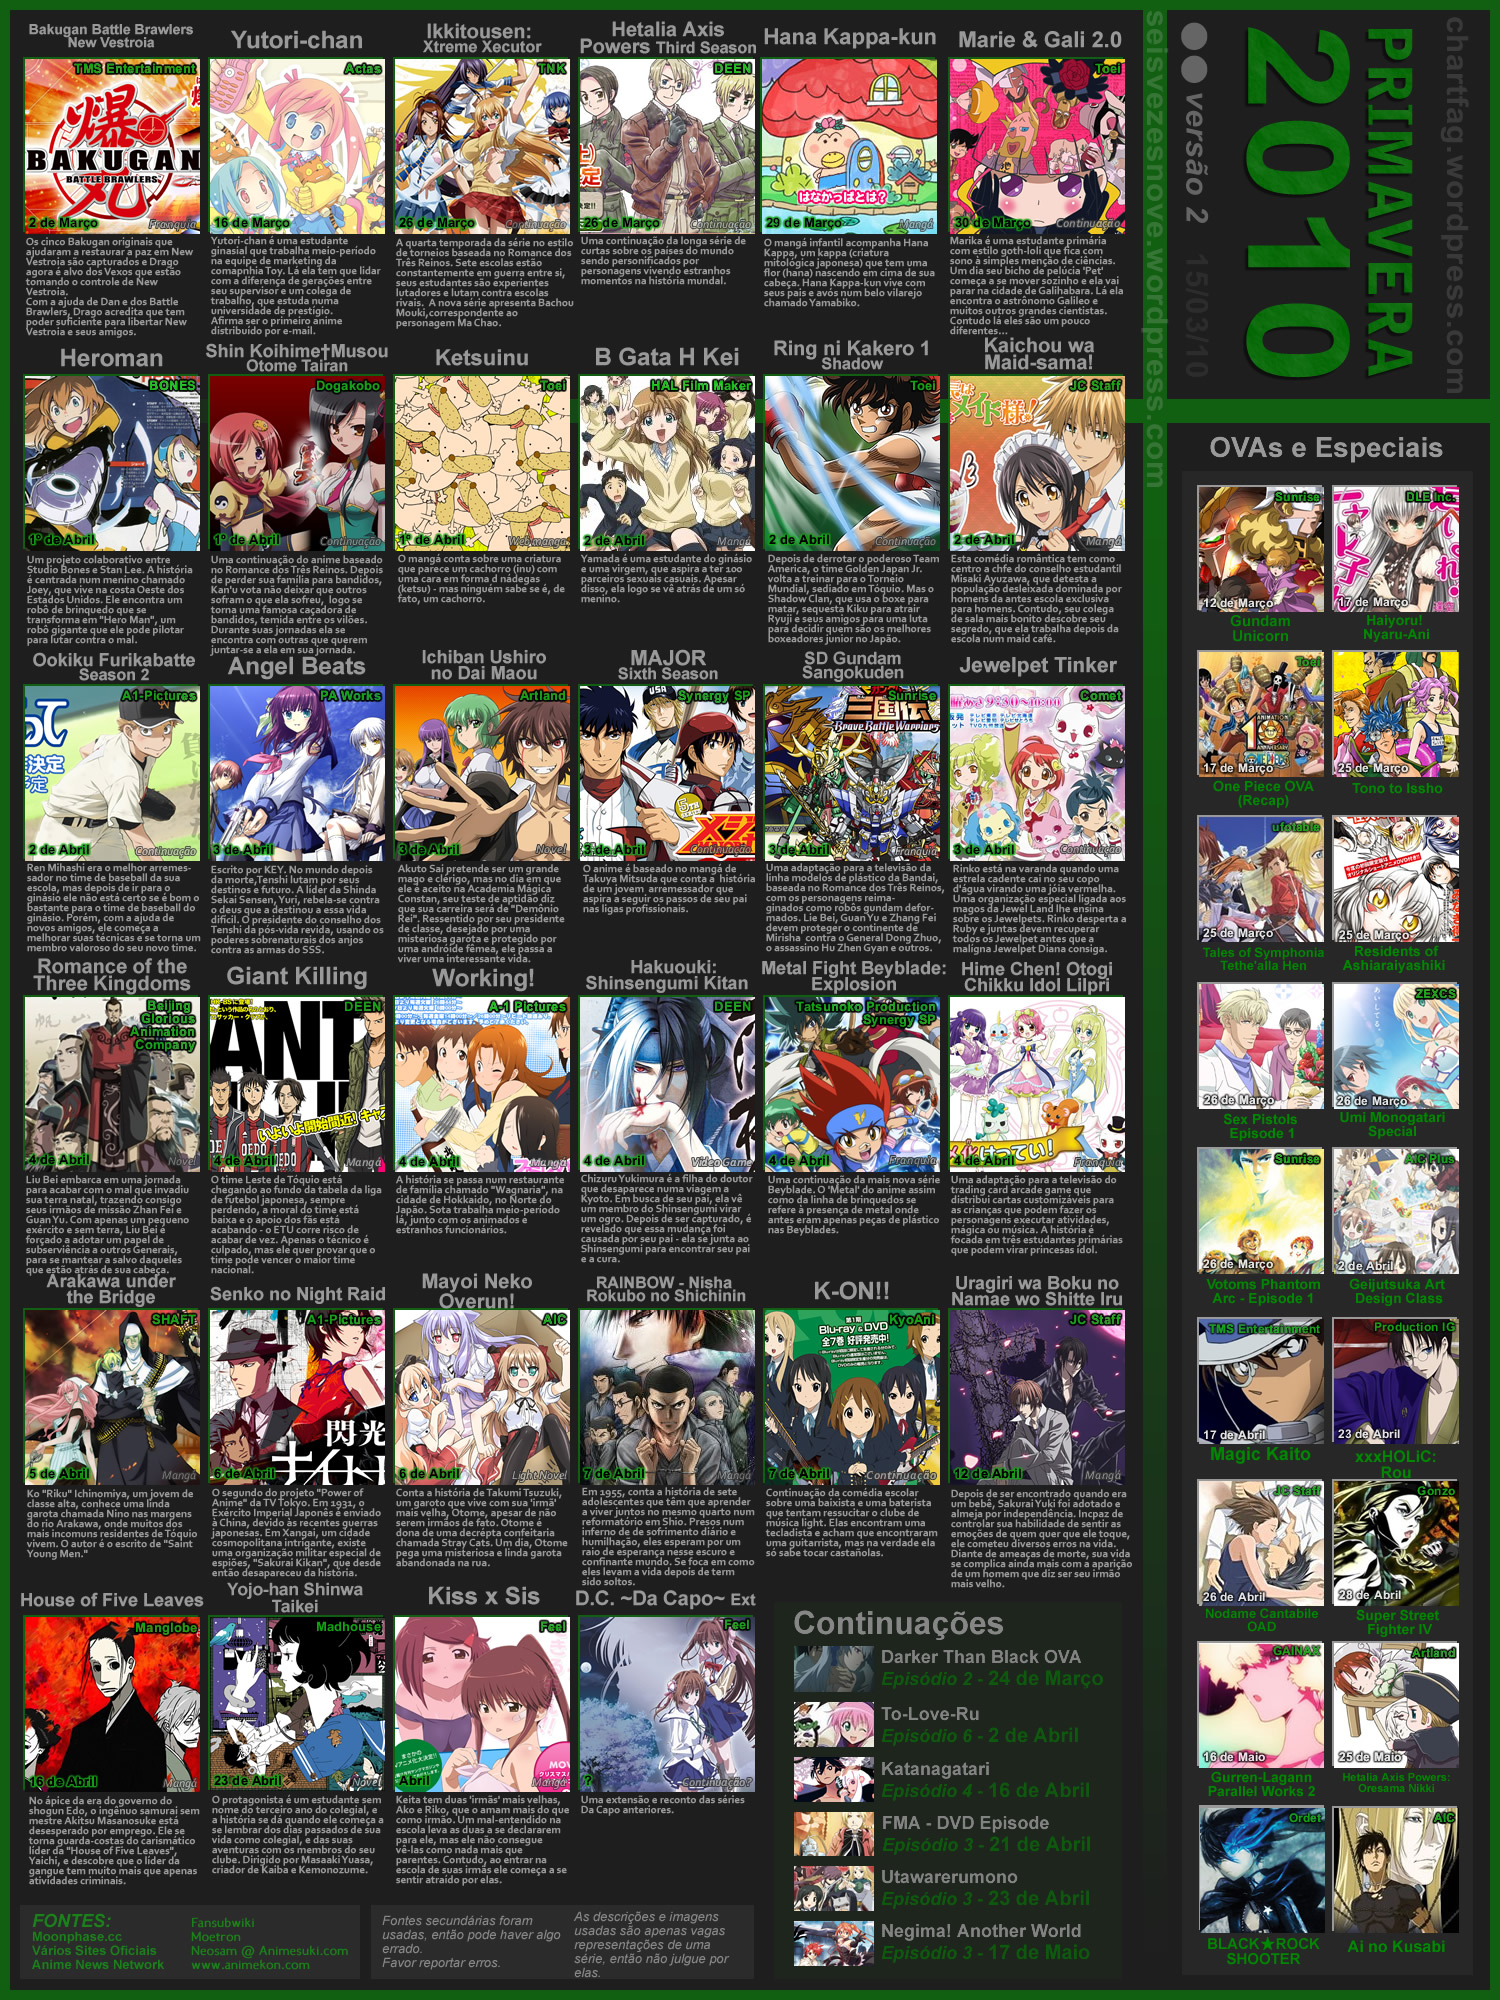 Os Animes mais Esperados dessa Primavera - Página 10 de 12 - Anime United